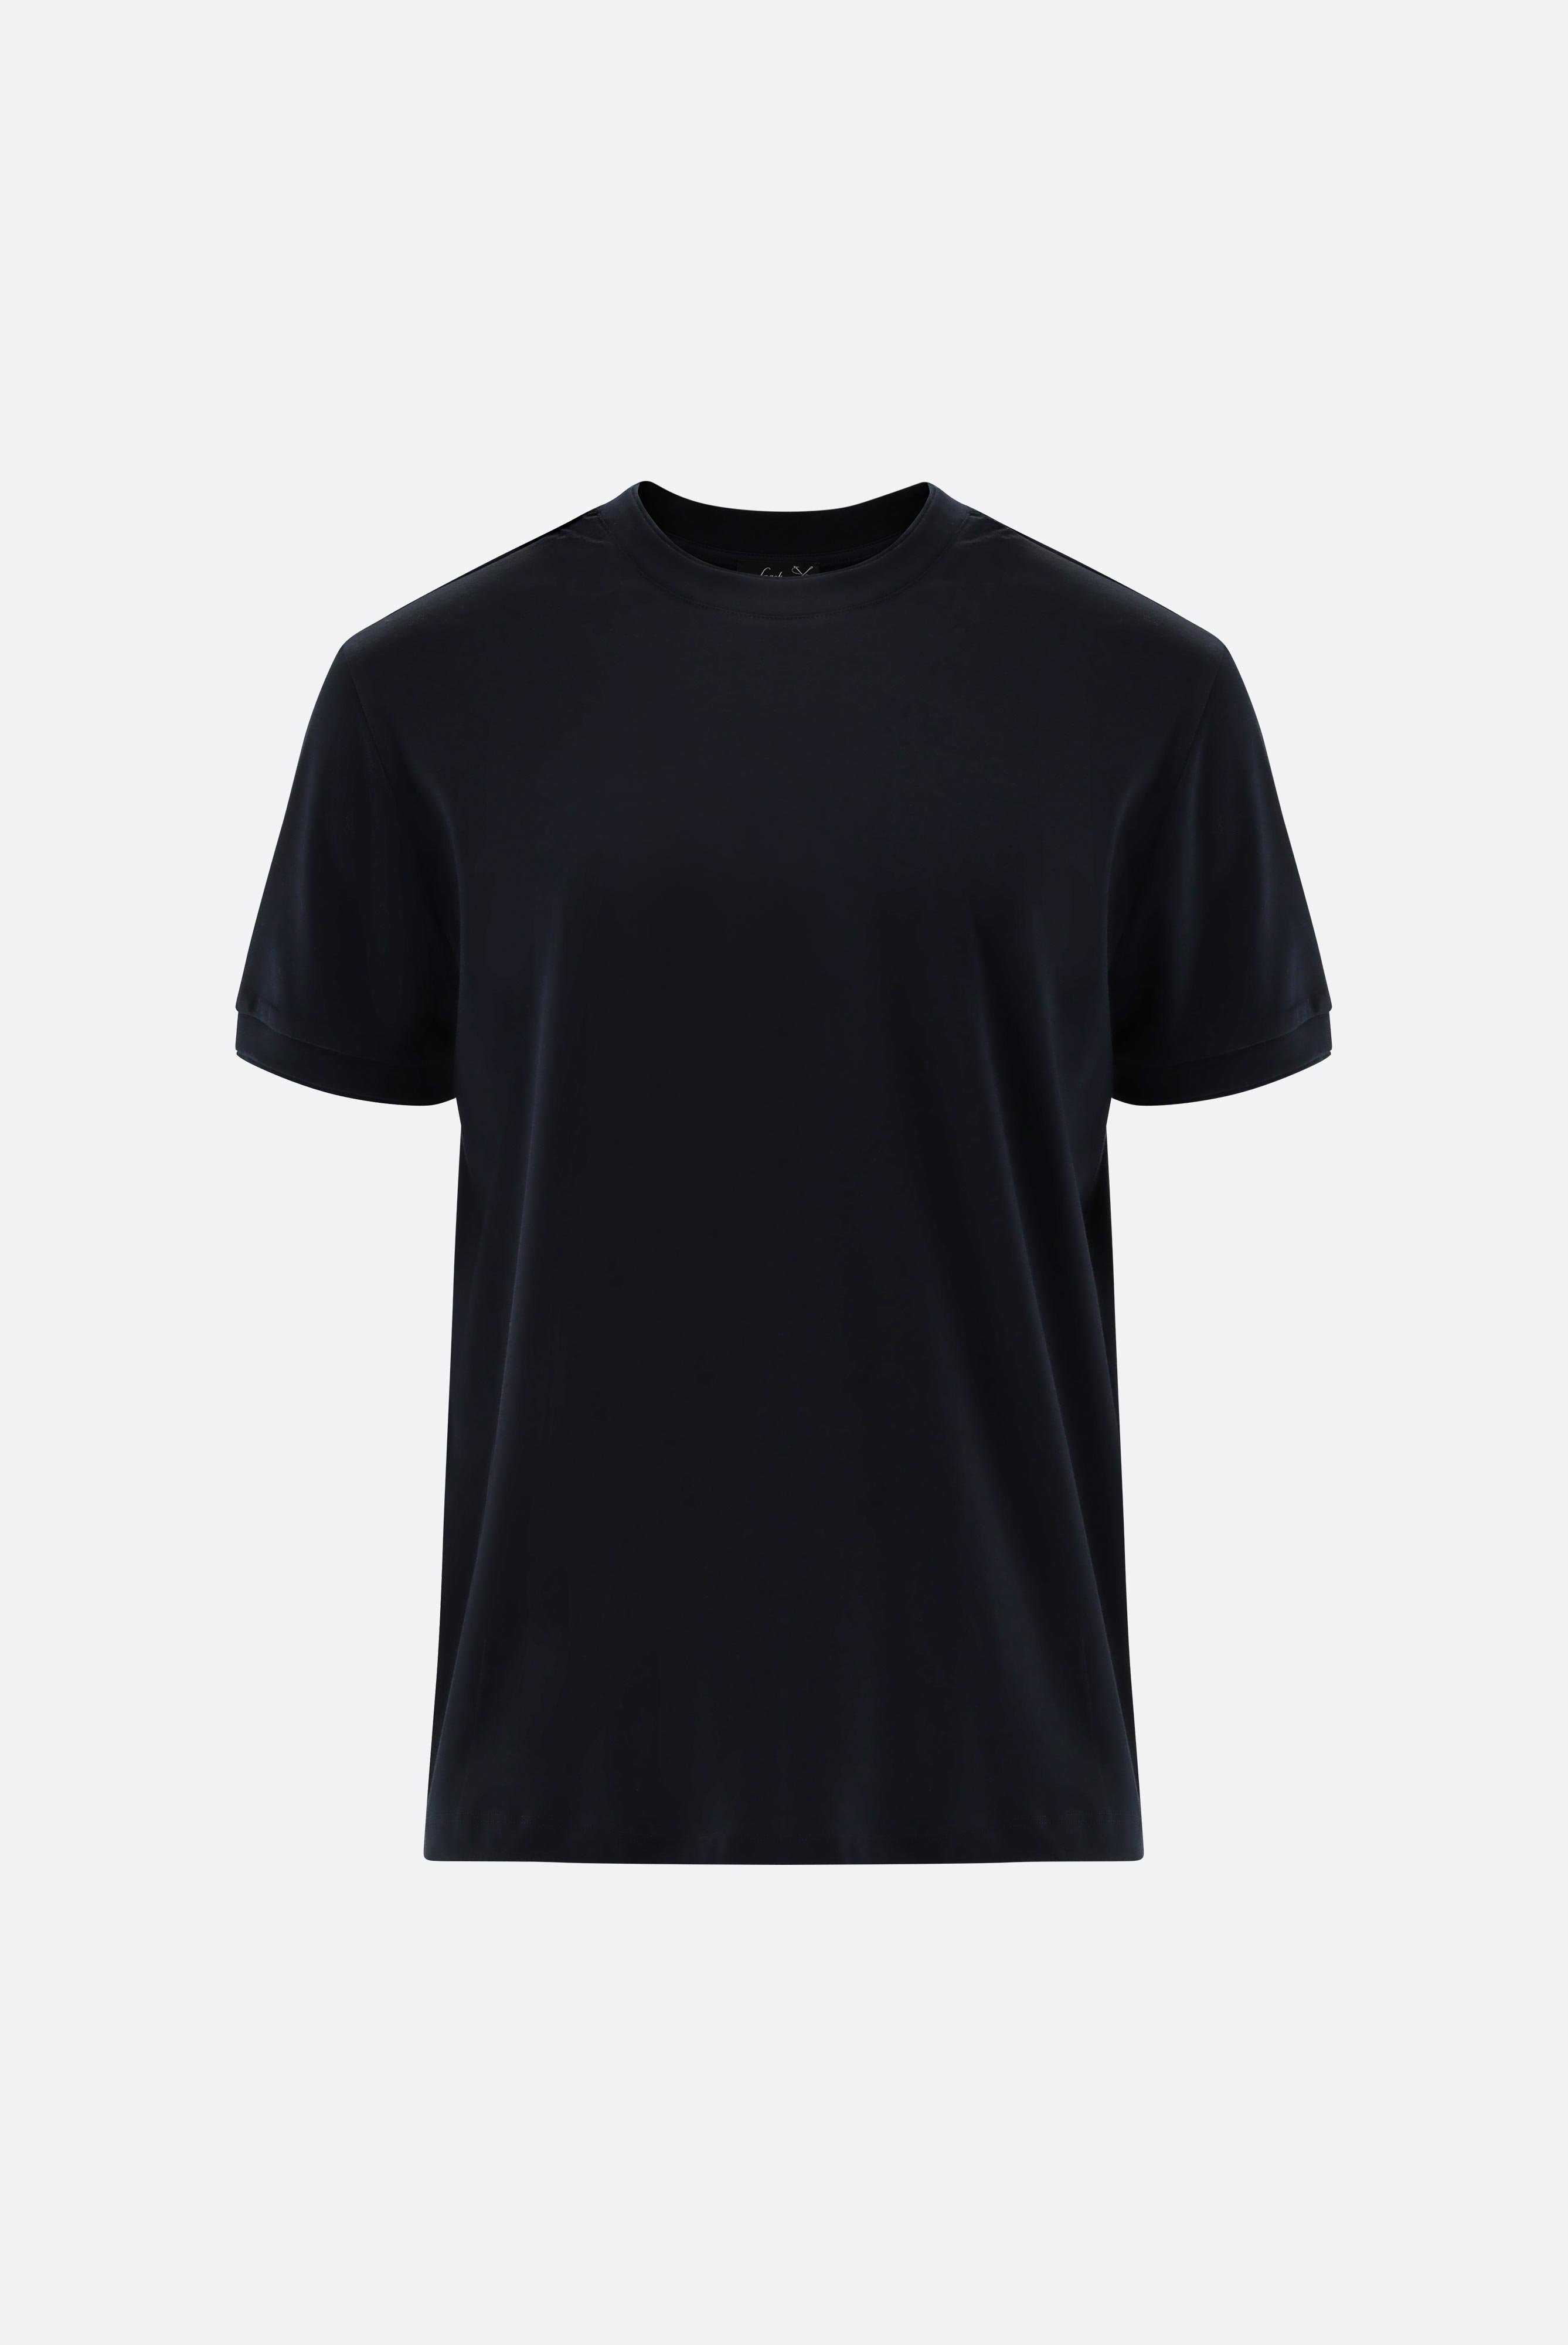 T-Shirts+T-Shirt mit Paspel Details+20.1673.U2.180053.790.XS